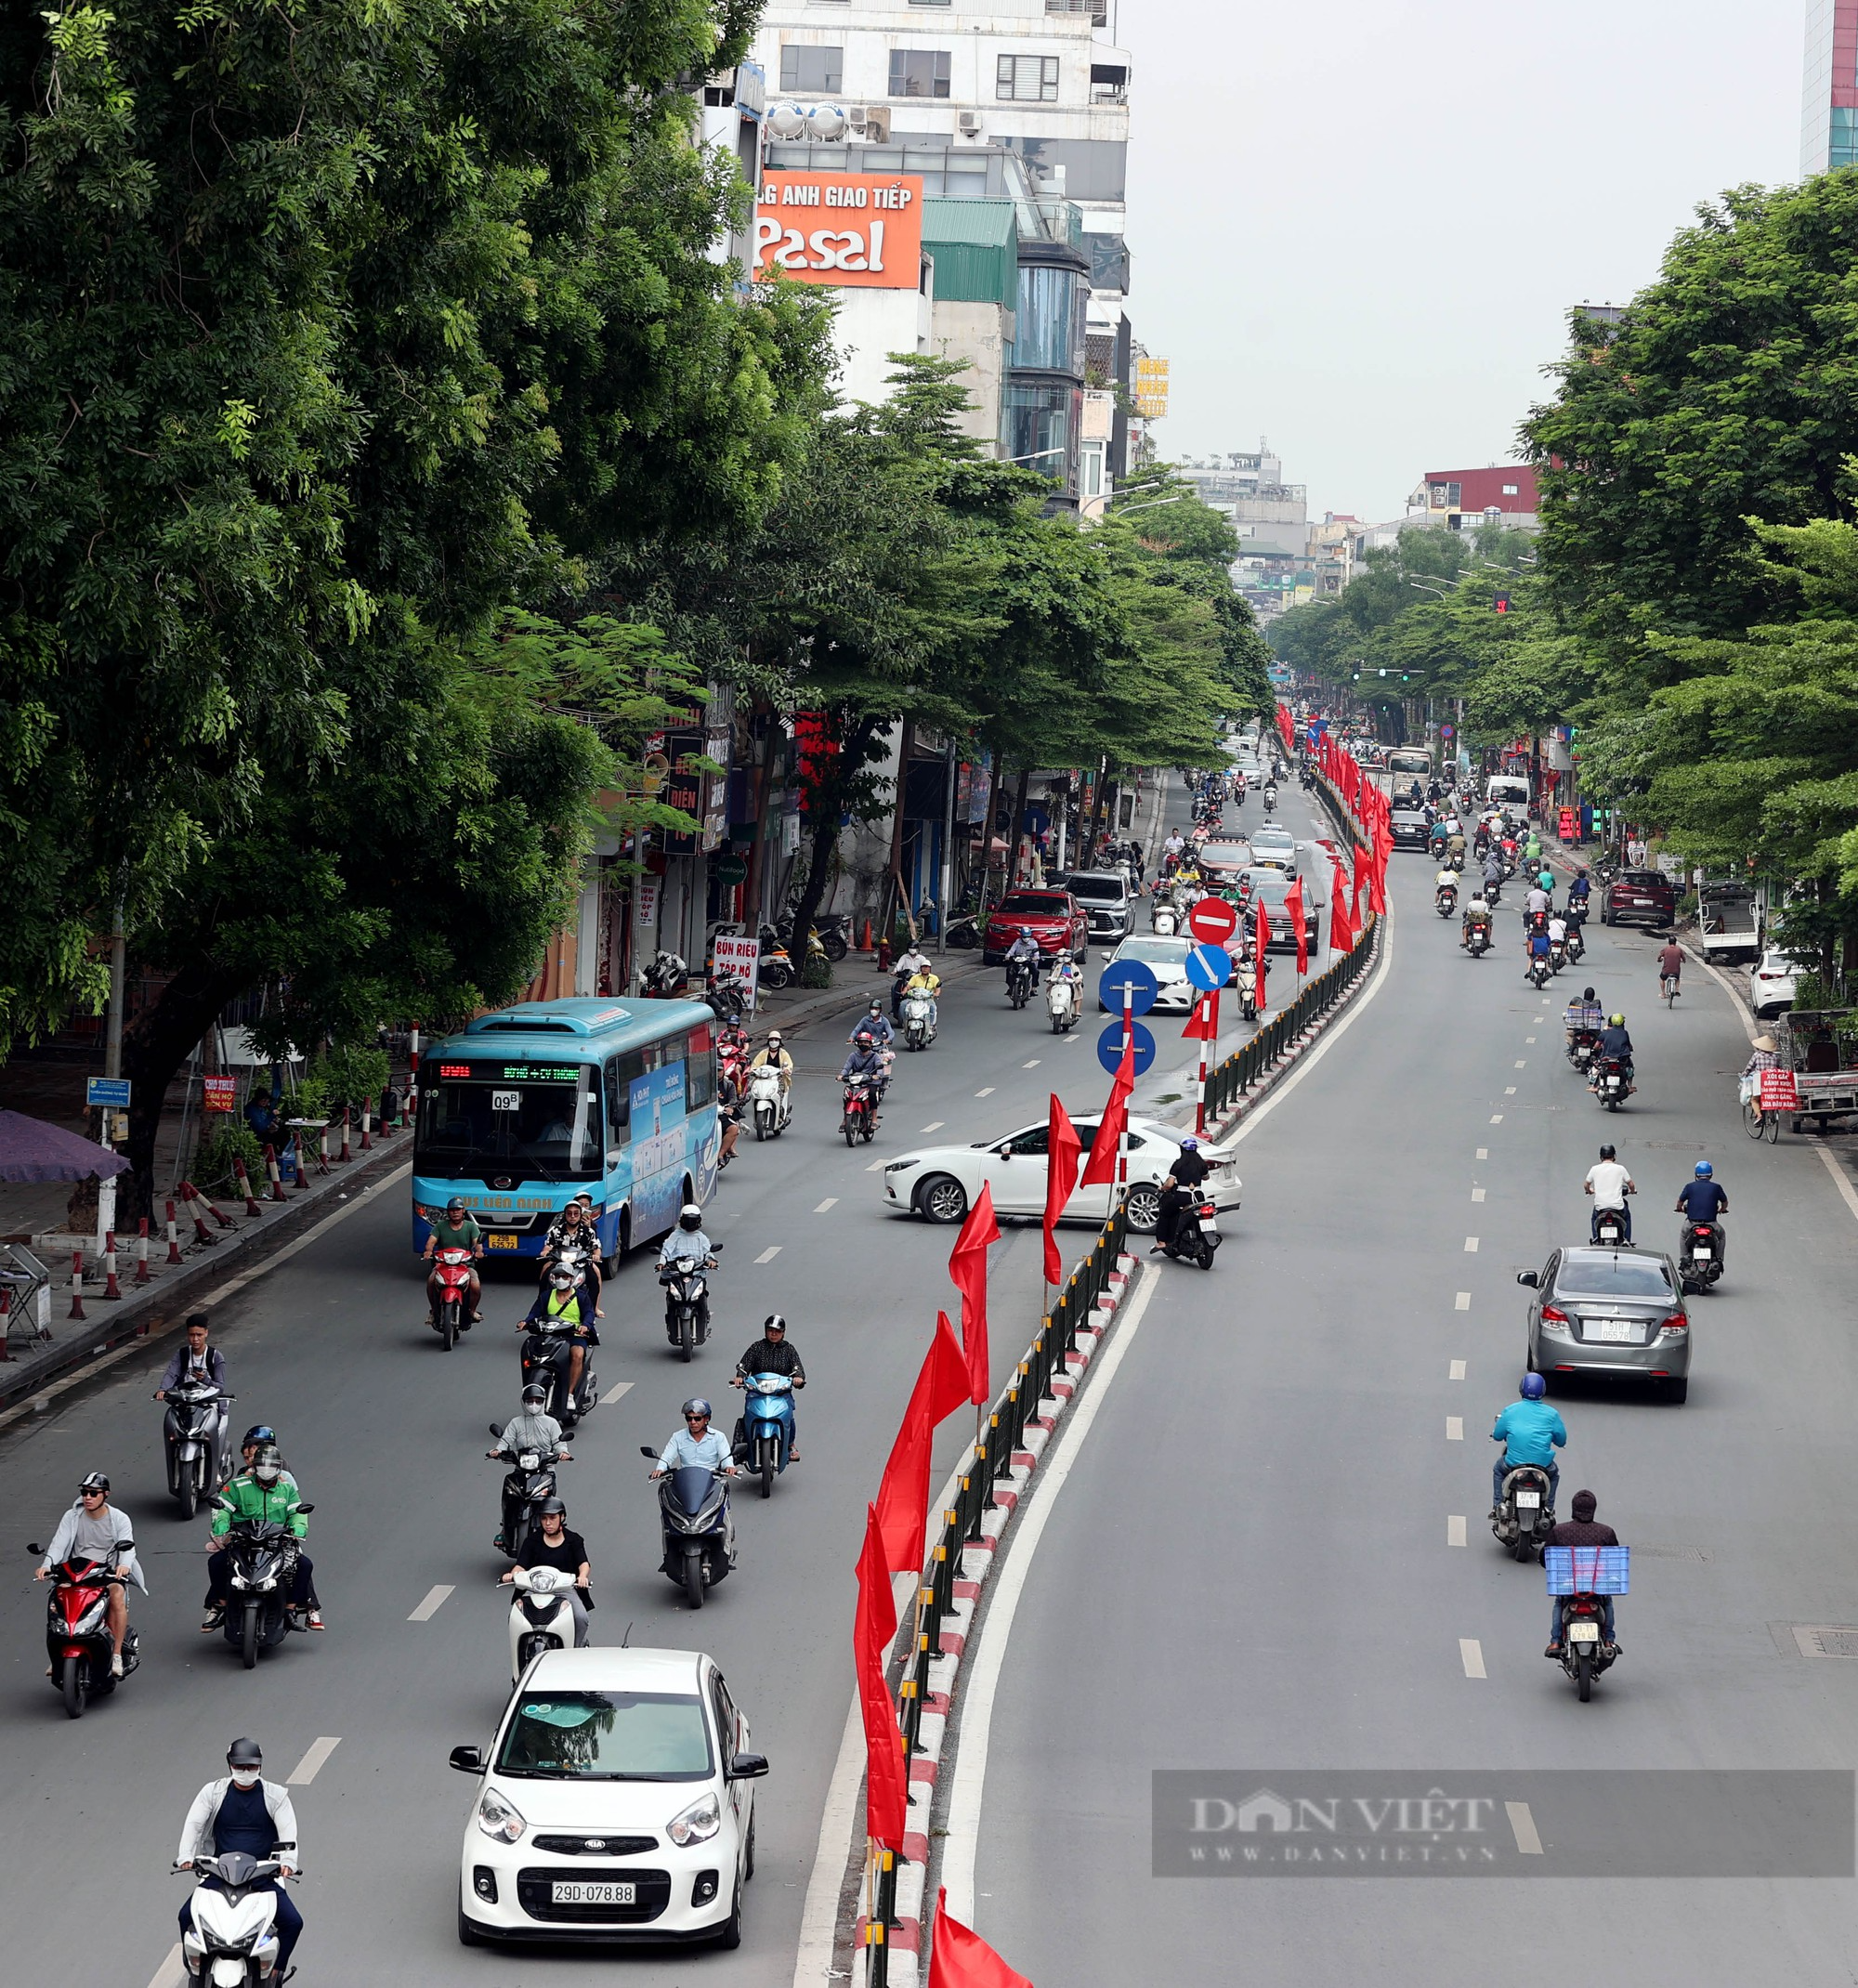 Đường phố Thủ đô được trang hoàng rực rỡ chào mừng ngày Quốc khánh 2/9 - Ảnh 1.